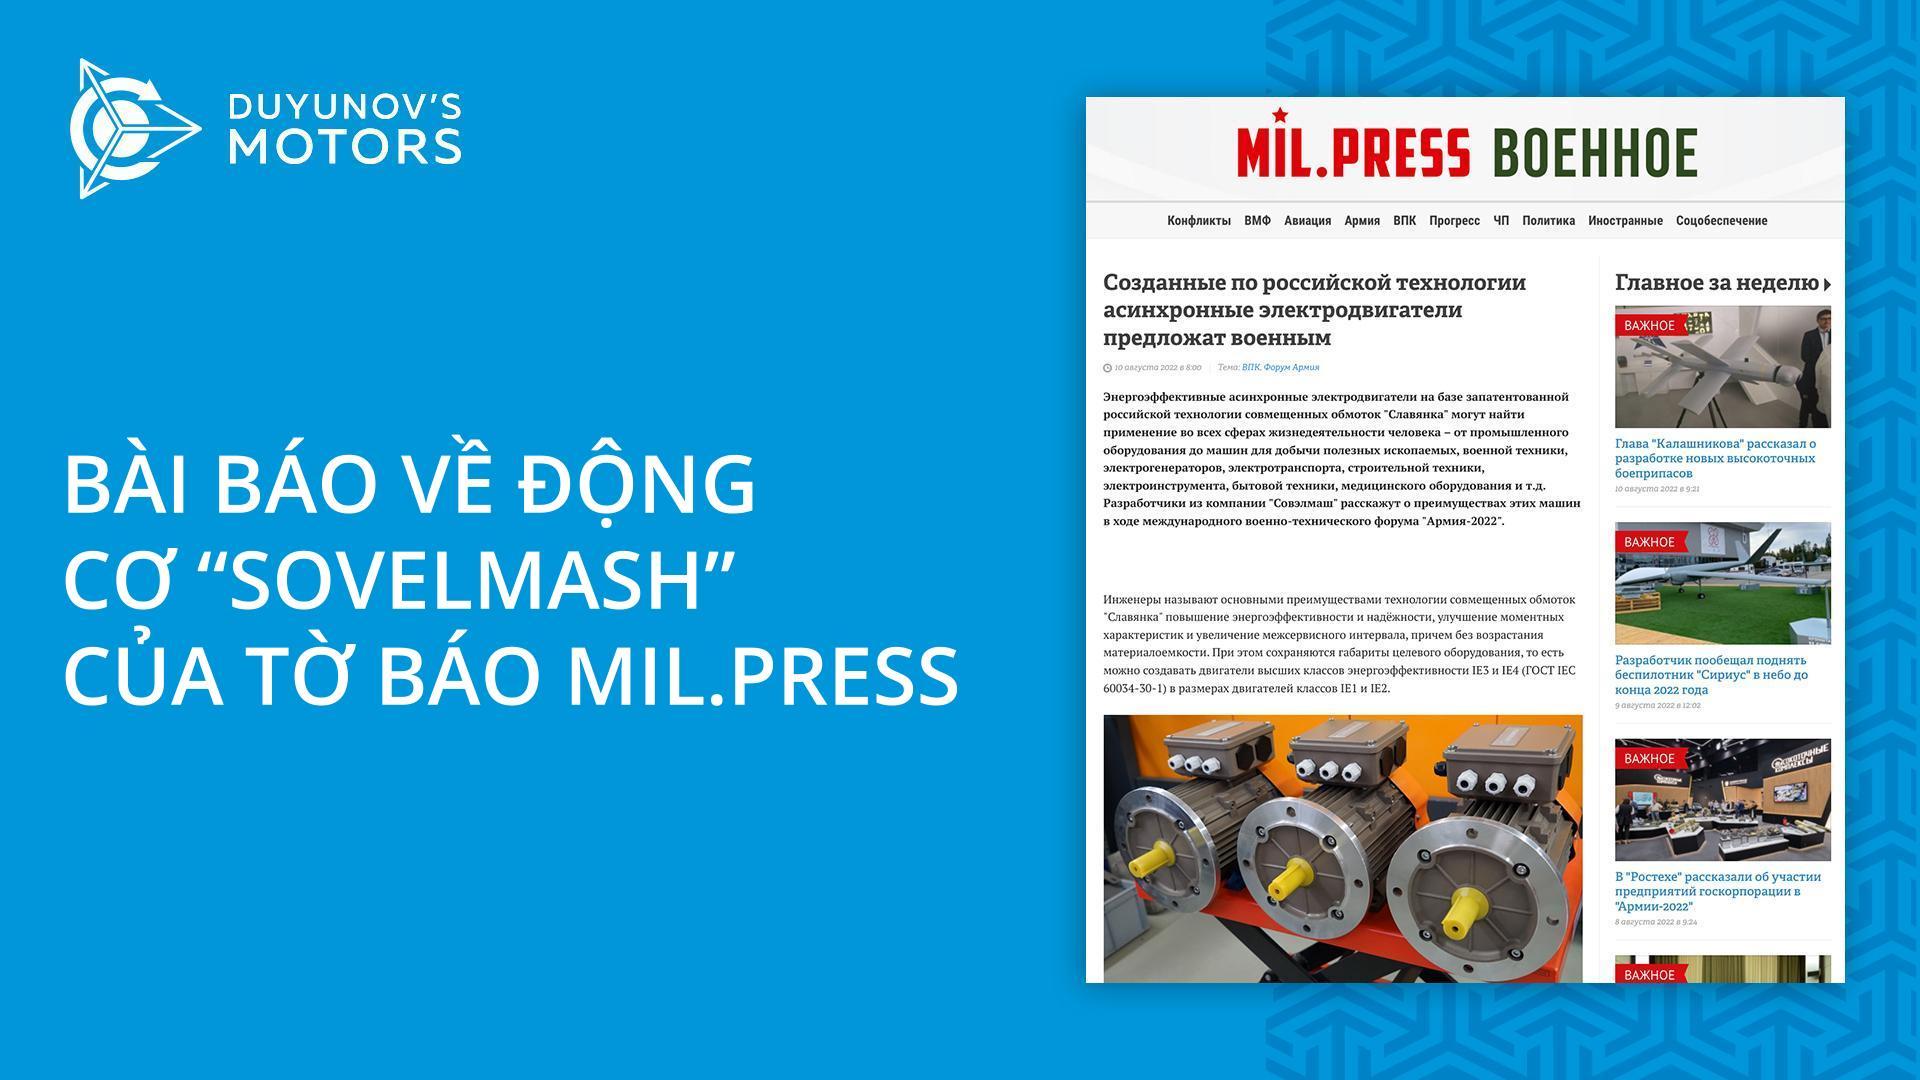 Bài báo mới về động cơ "Sovelmash" của hãng tin quân sự Mil.Press